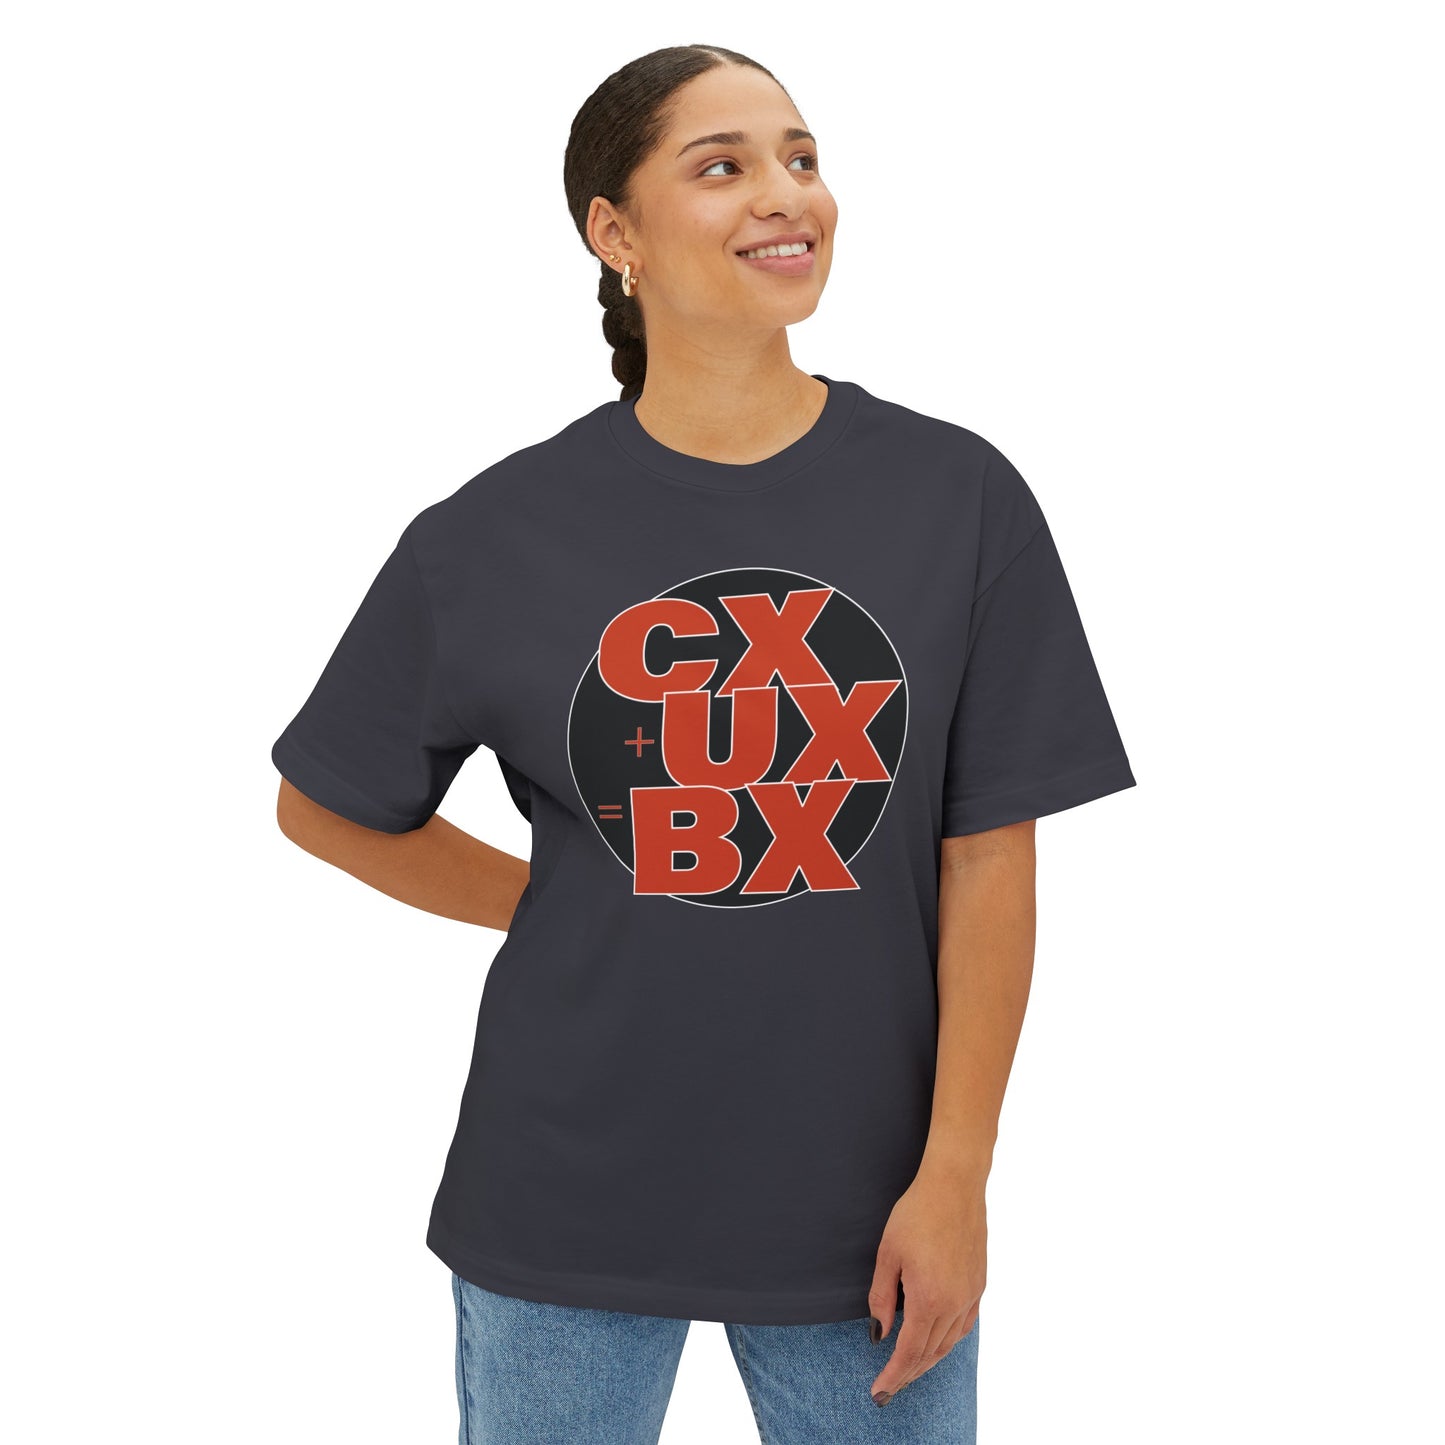 Experience Equation Unisex Oversized Boxy Tee